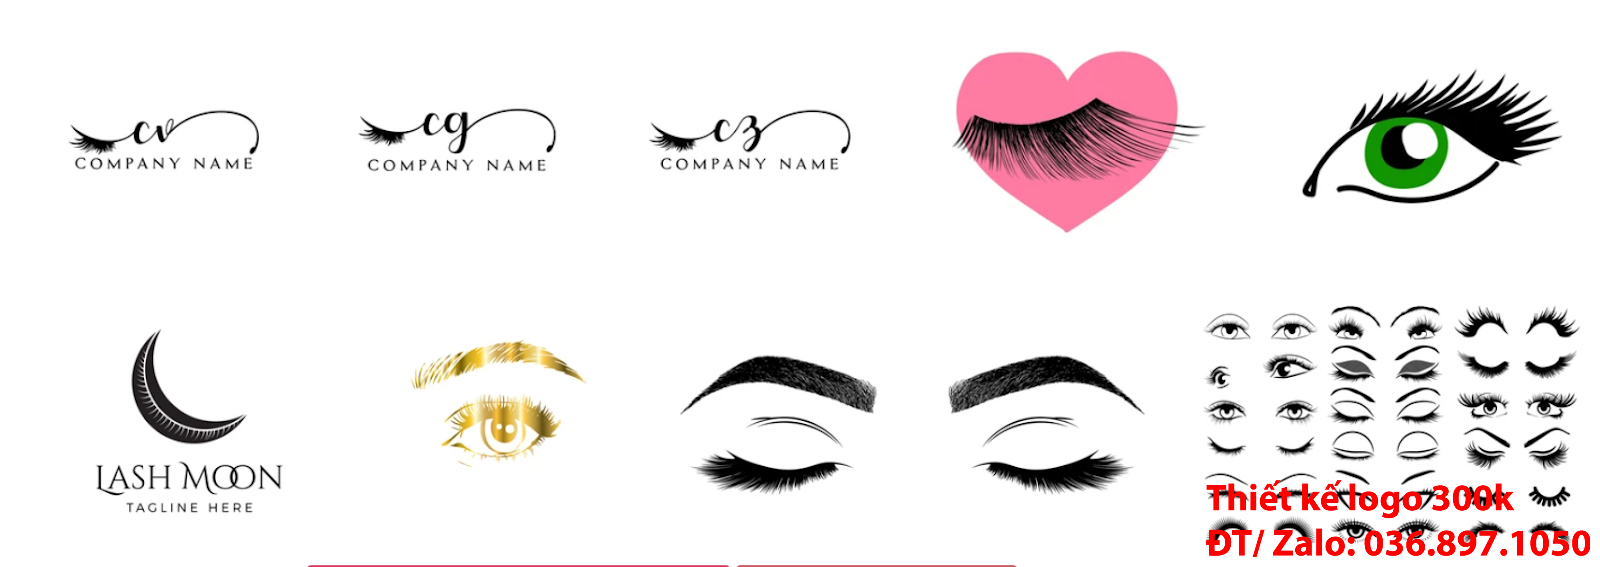 Nhận tạo Mẫu logo thẩm mỹ lông mi mắt đẹp miễn phí online cho các công ty tại khu vực TpHCM chuyên nghiệp uy tín nhất